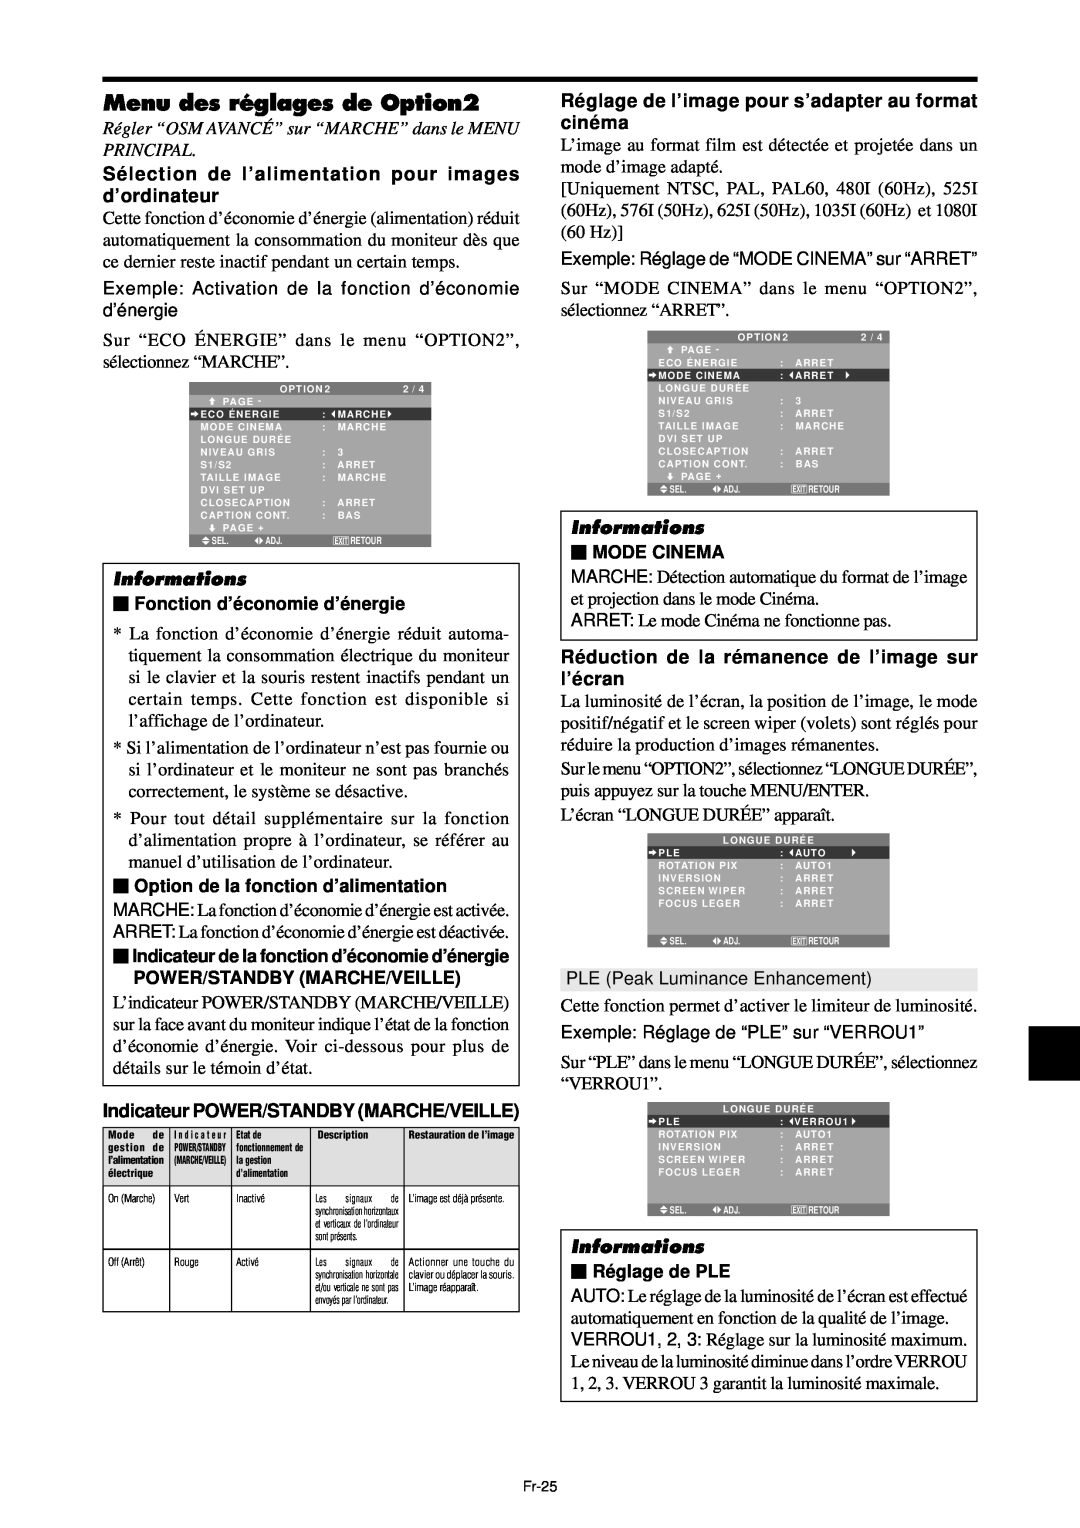 NEC PX-61XM4A, PX-42XM4A Menu des réglages de Option2, Sélection de l’alimentation pour images d’ordinateur, Informations 